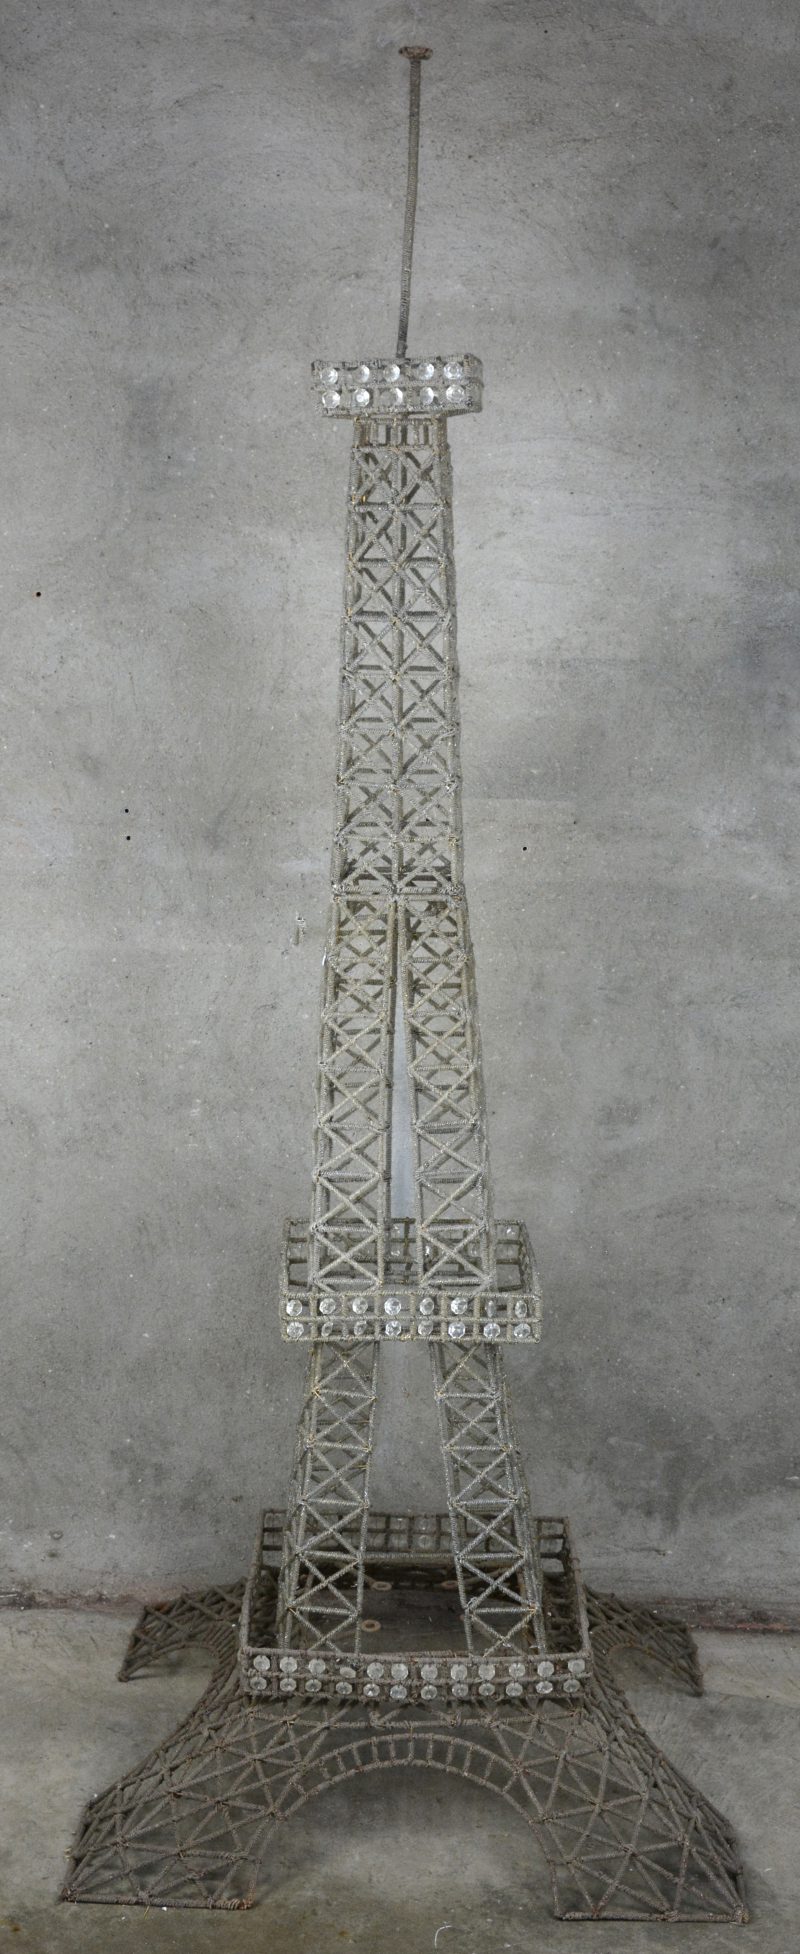 Een model van de Eiffeltoren, bestaande uit drie delen van metaaldraad en versierd met doorschijnende kraaltjes van kunststof.